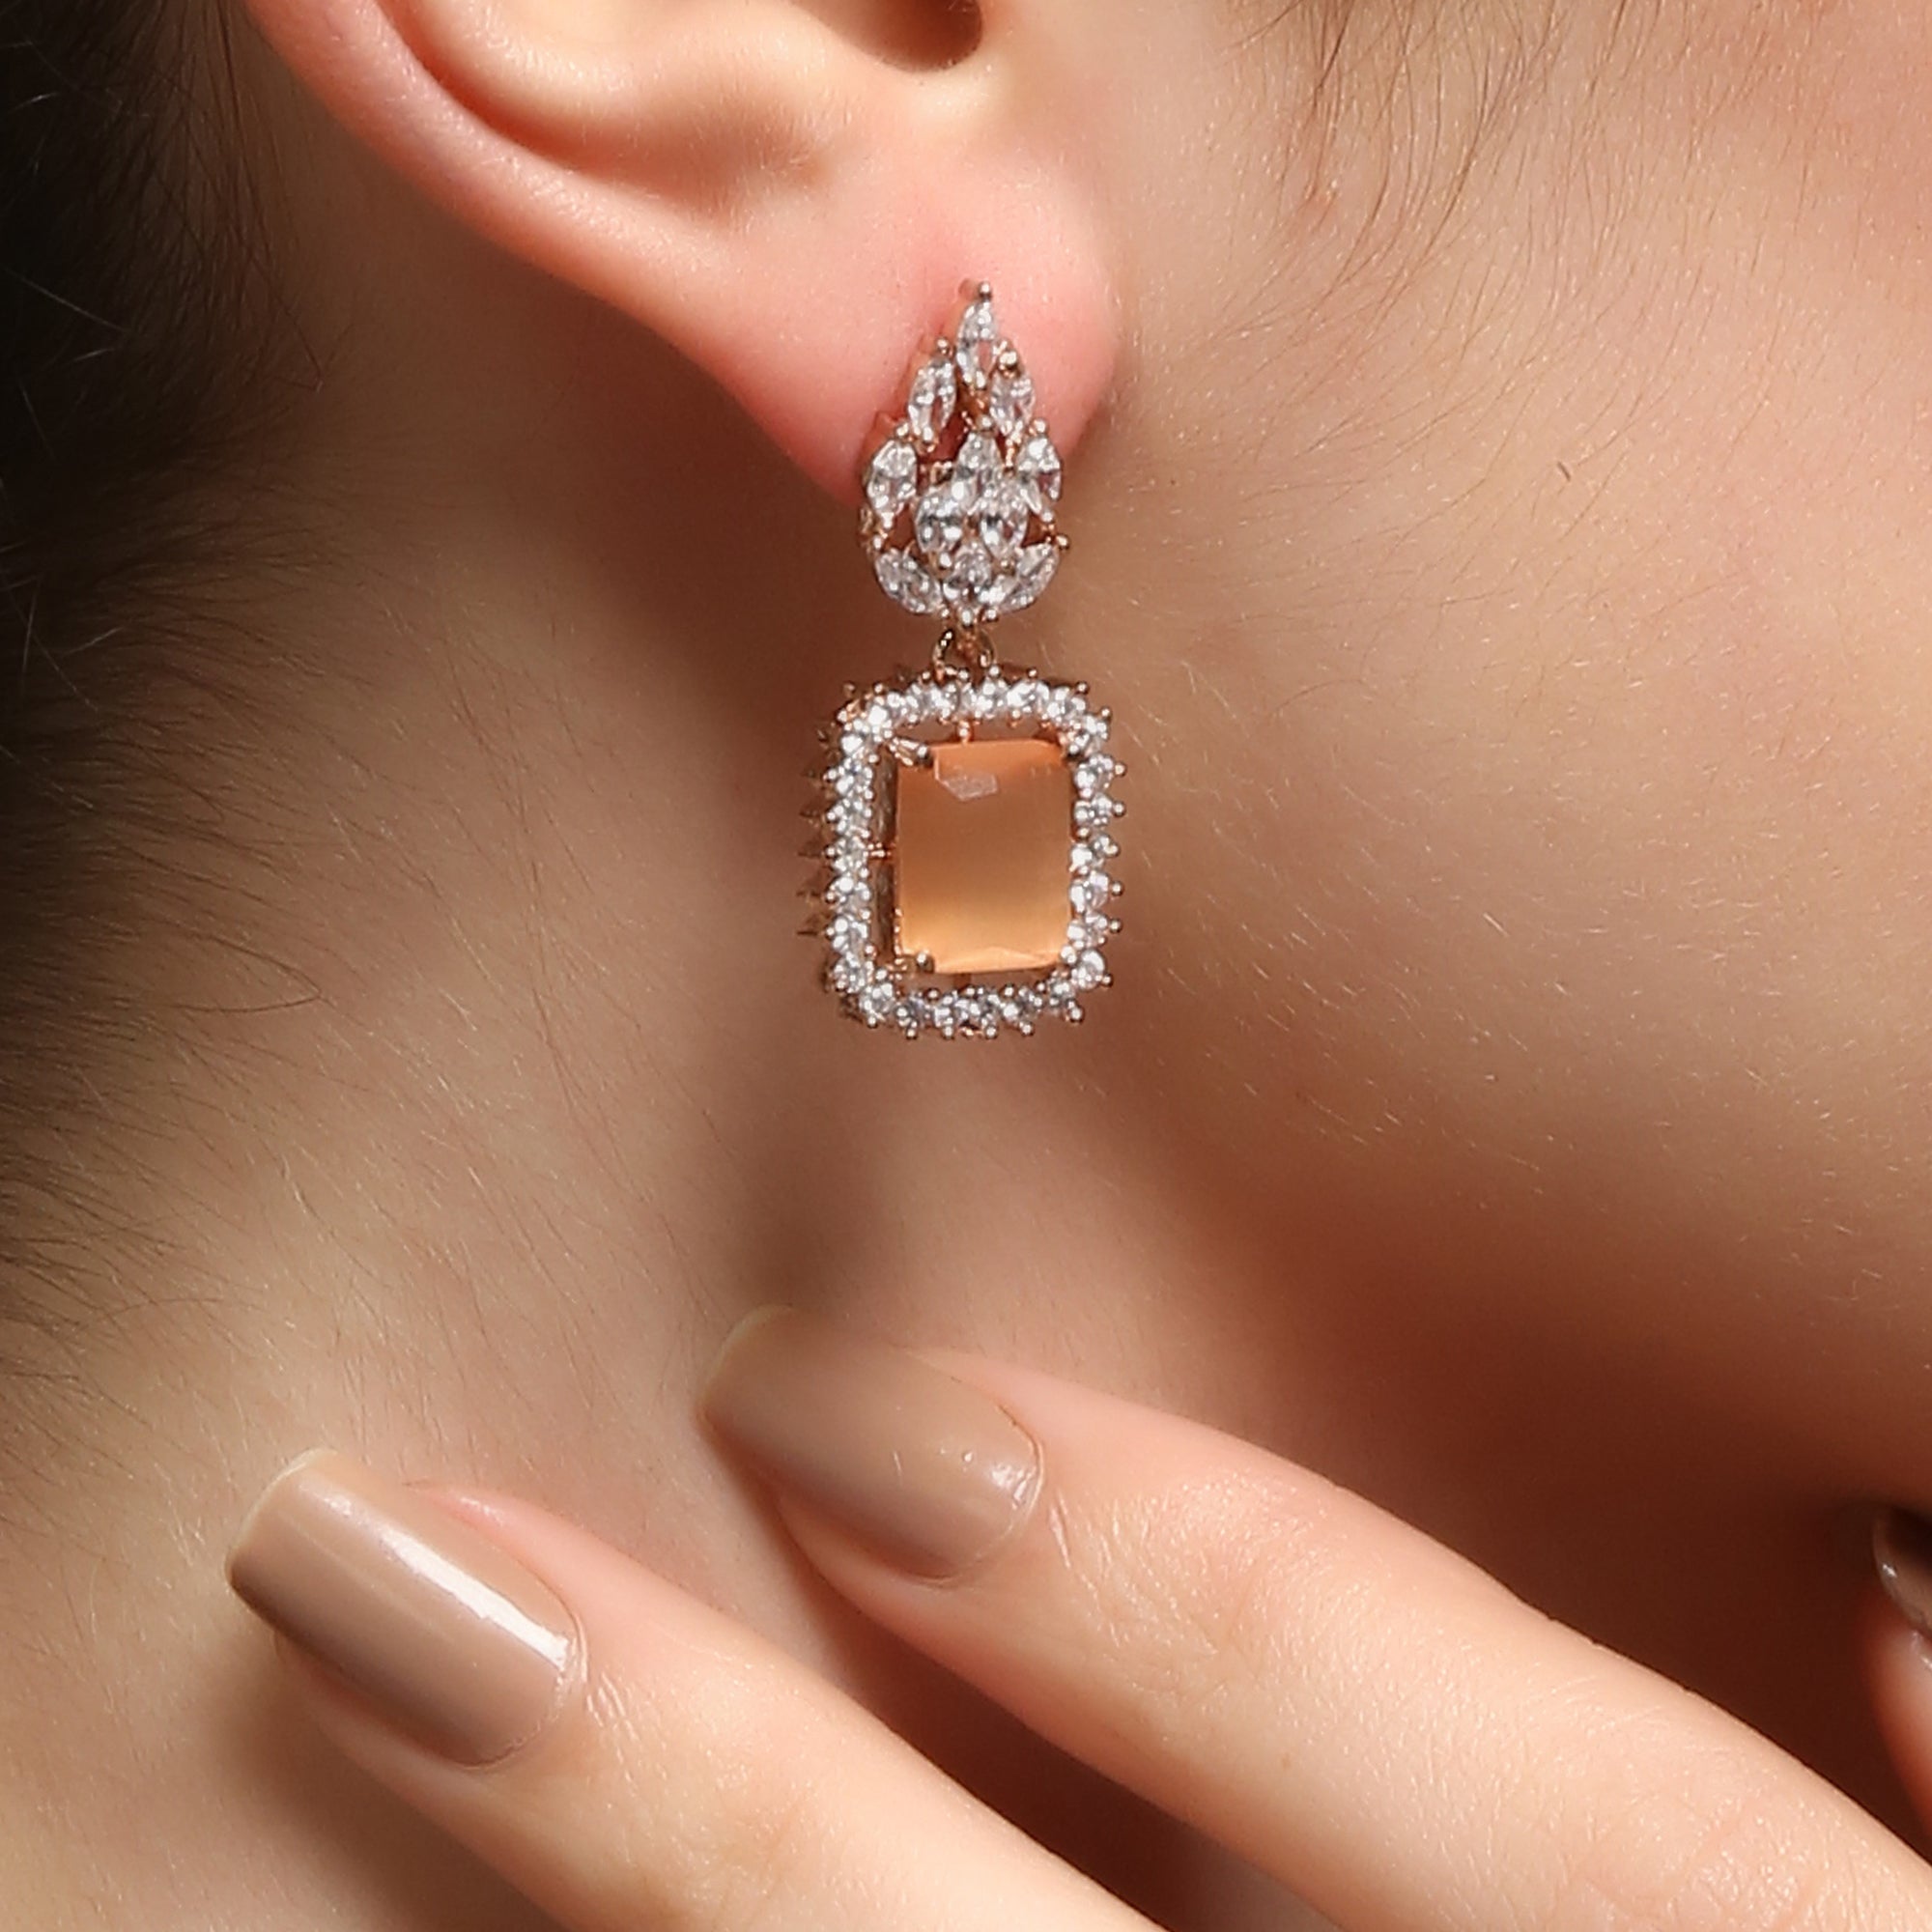 Buy quality Gold cocktail diamond earrings ber 027 in Delhi